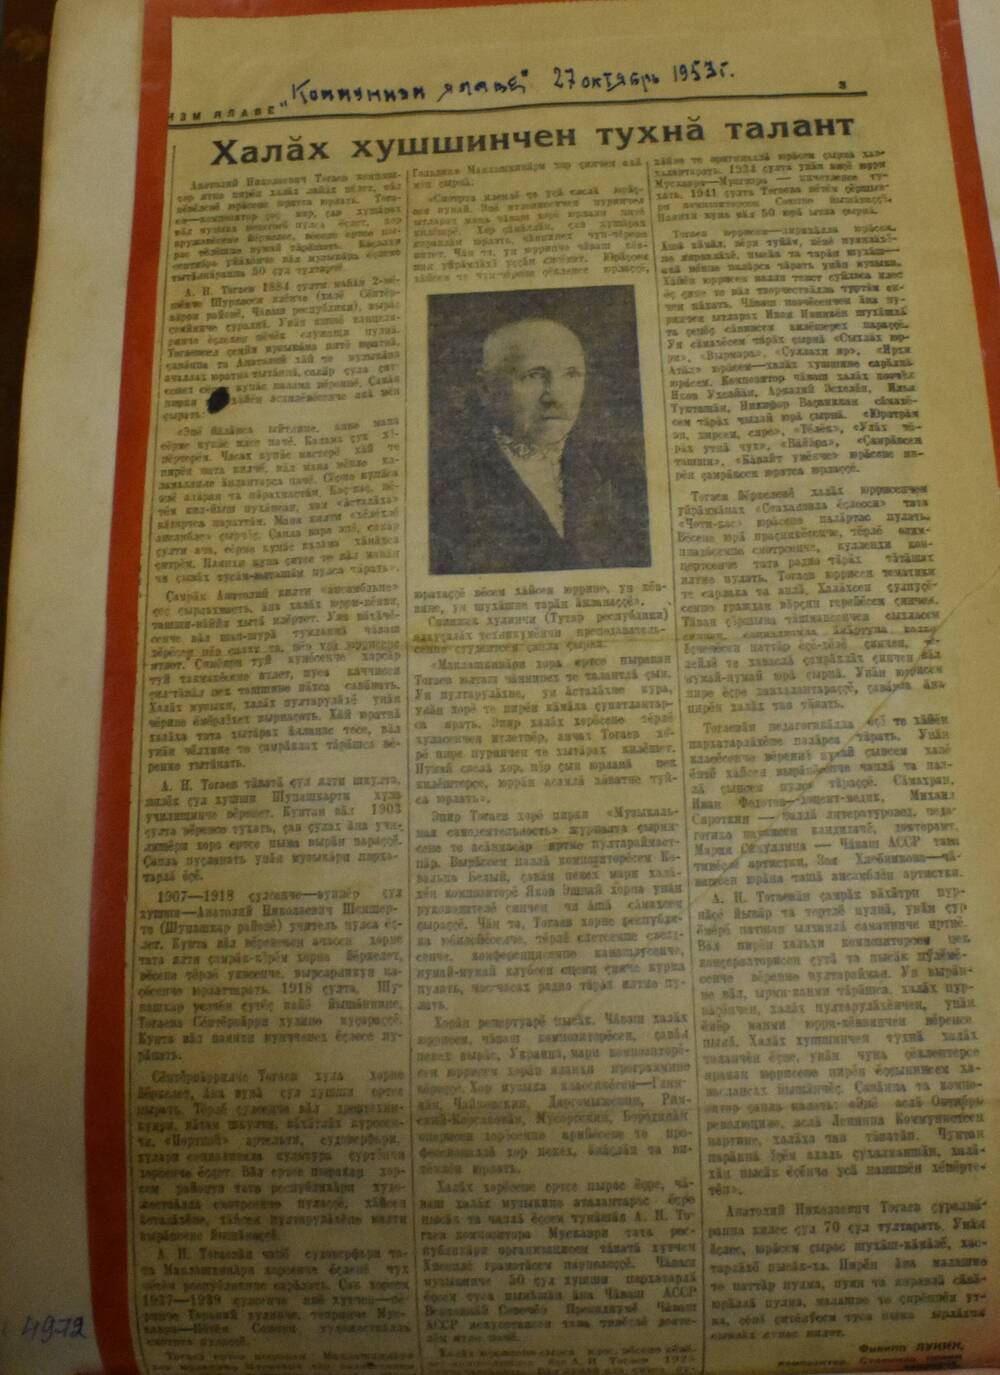 Вырезка из газеты Коммунизм ялаве от 27 октября 1953 года